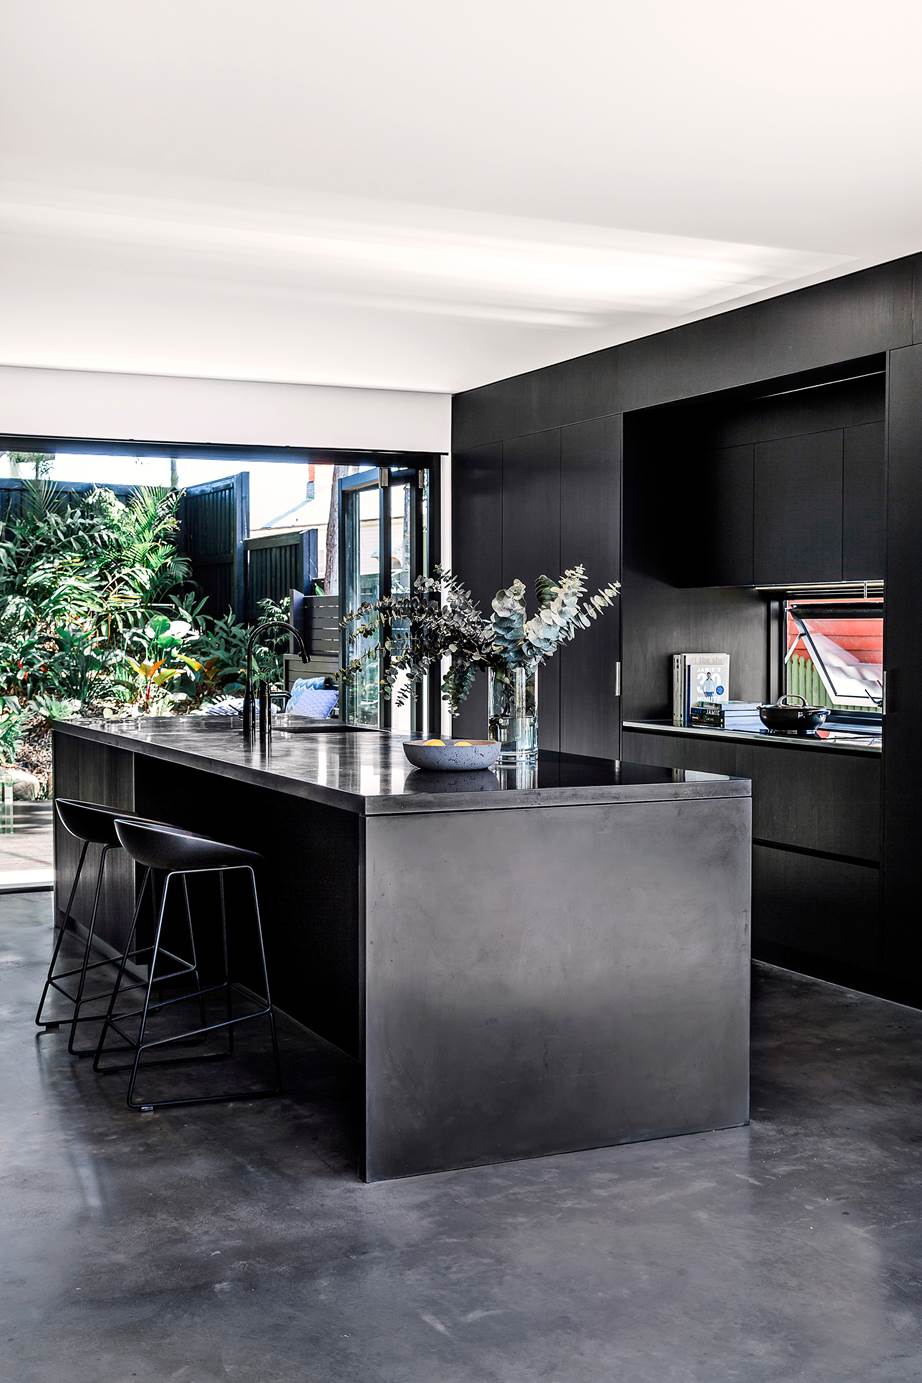 Black kitchen on polished black concrete floor